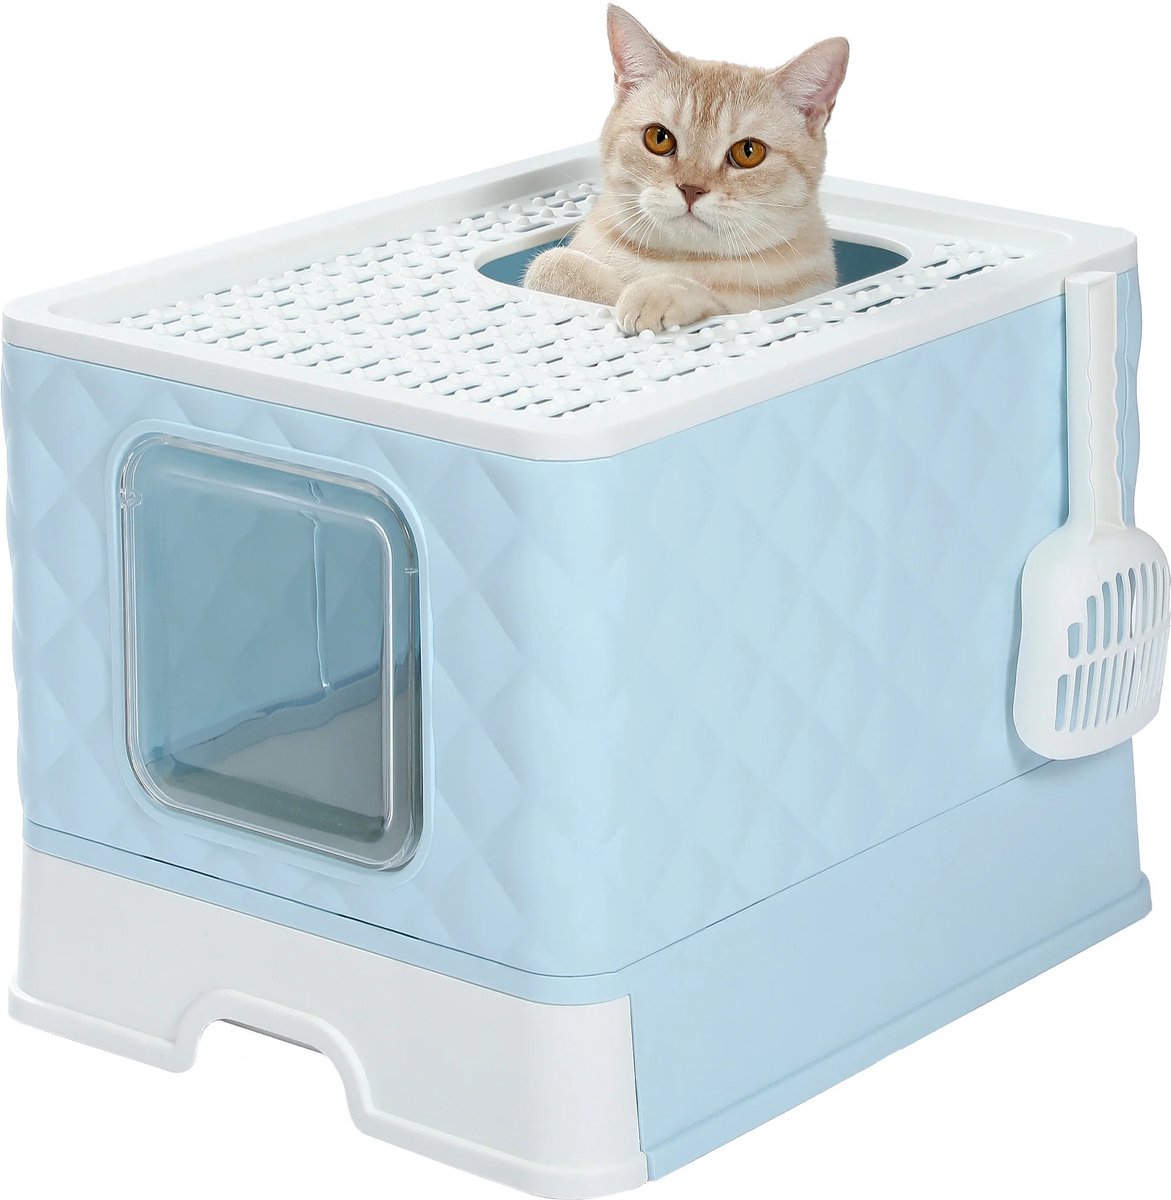 Kattenbak - Kattenbak met schepje - Opvouwbaar - Lichtblauw - 40cm/50cm/37cm - Makkelijk schoon te maken kattenbakvulling - Kattenbakken